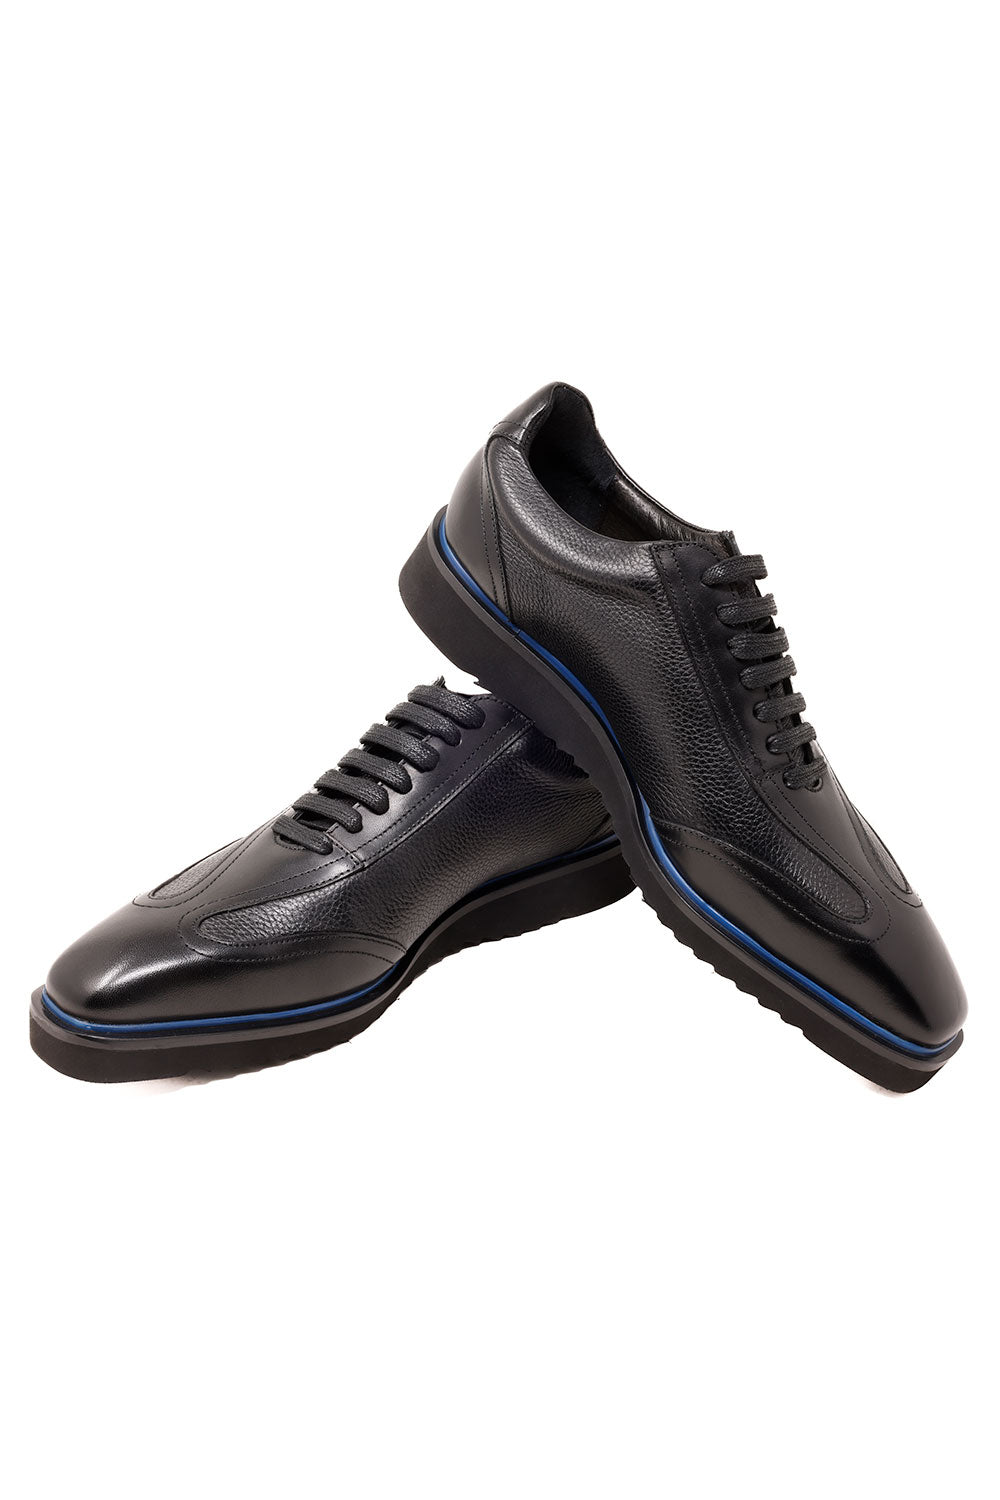 Barabas Men's Wingtip Oxford Leather Loafer Lace up Shoes 3SH38 Black